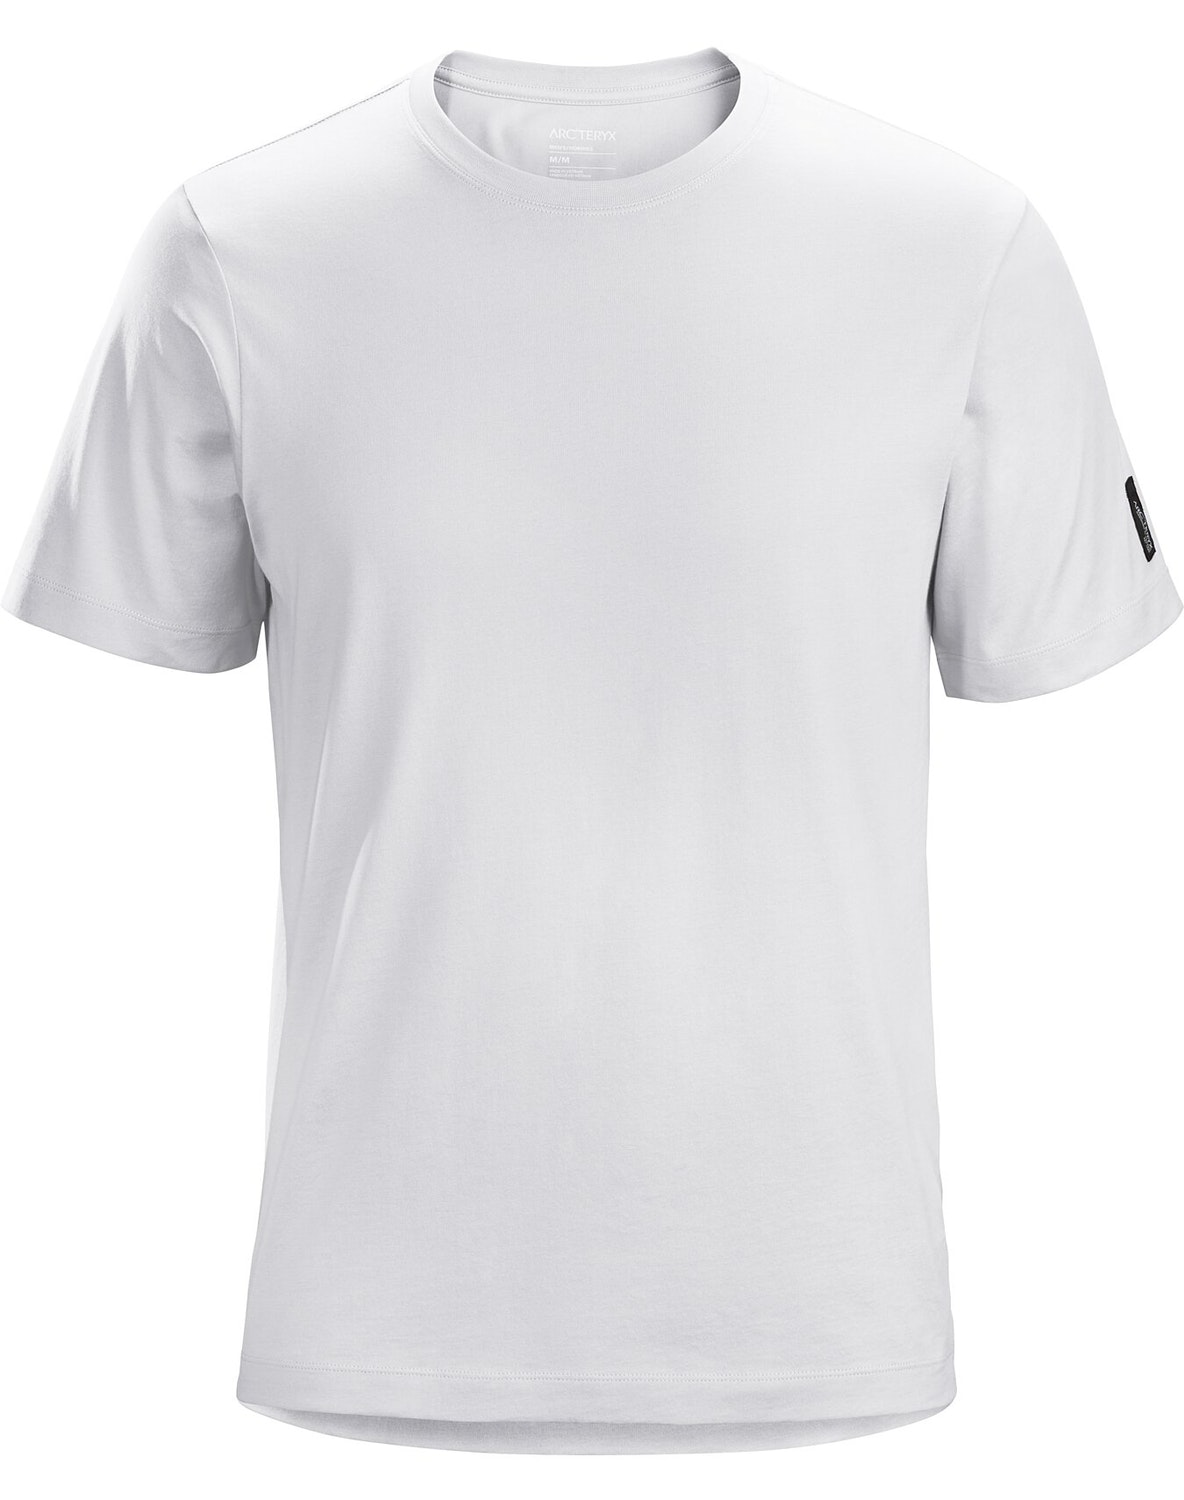 T-shirt Arc'teryx Cinder Uomo Bianche - IT-711439